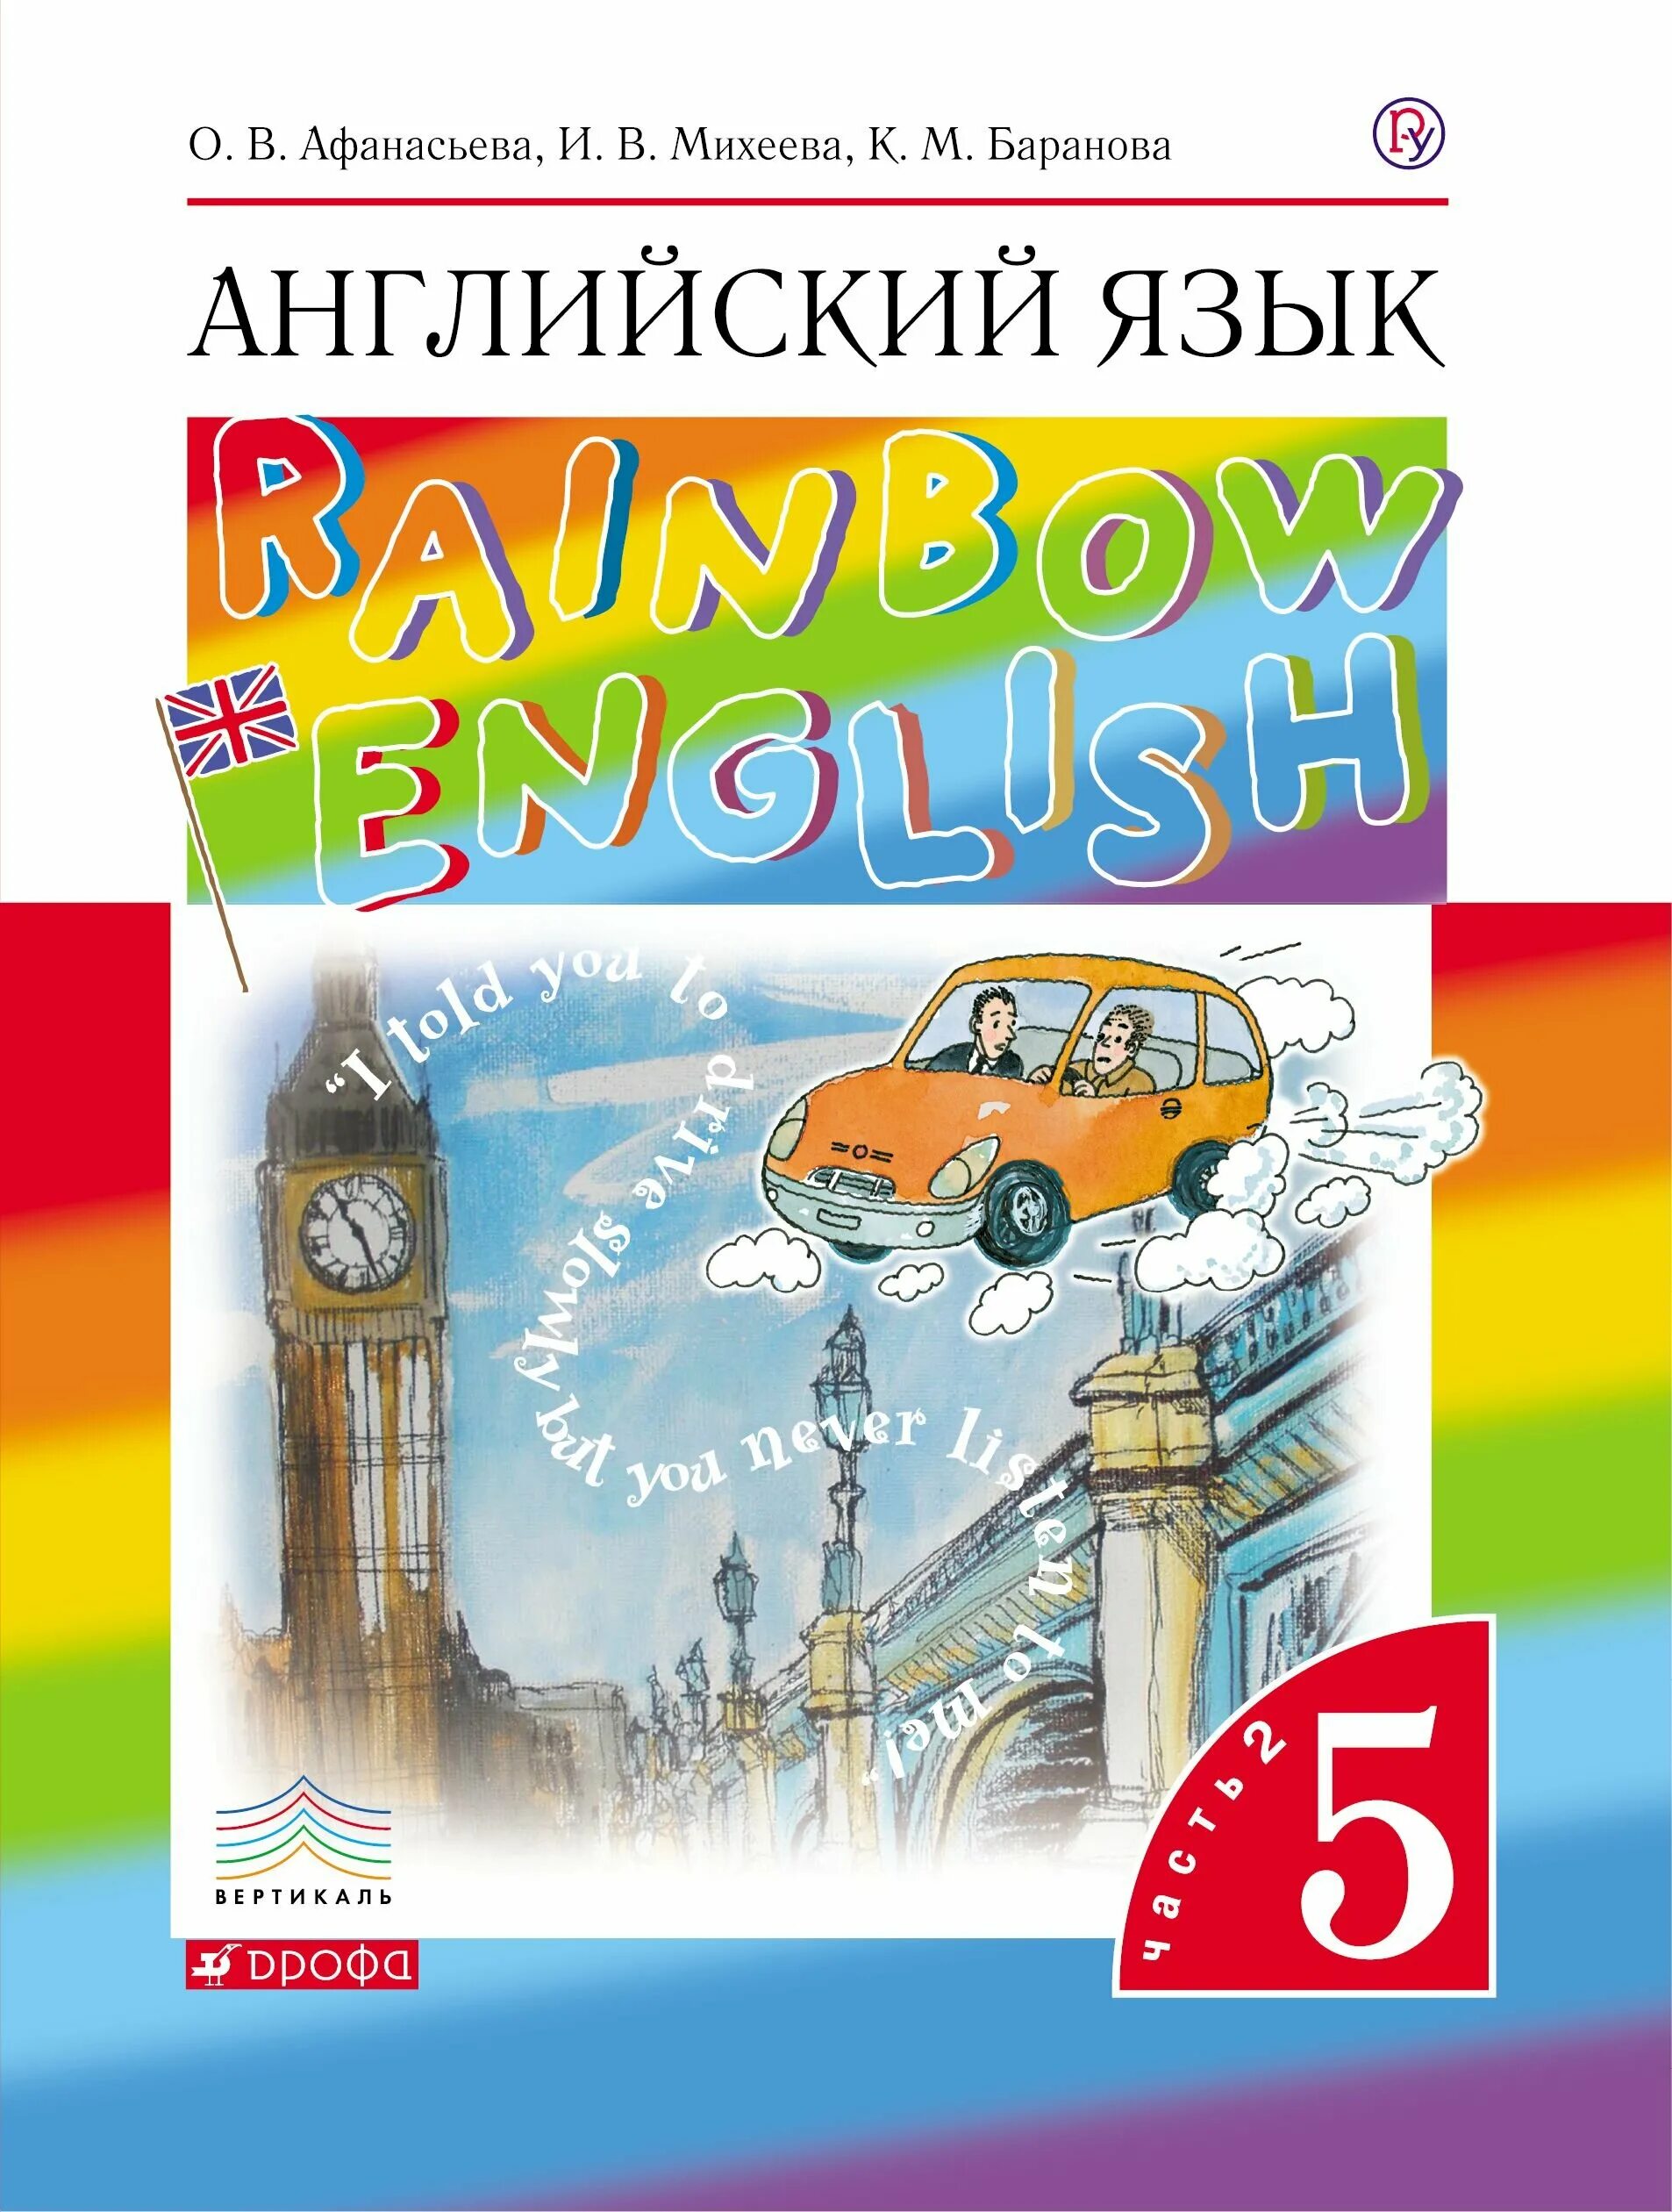 Английский язык 5 класс учебник Rainbow English. Английский язык (в 2 частях) Афанасьева о.в., Баранова к.м., Михеева и.в.. Английский 5 класс учебник Афанасьева. Rainbow English 5 класс учебник.